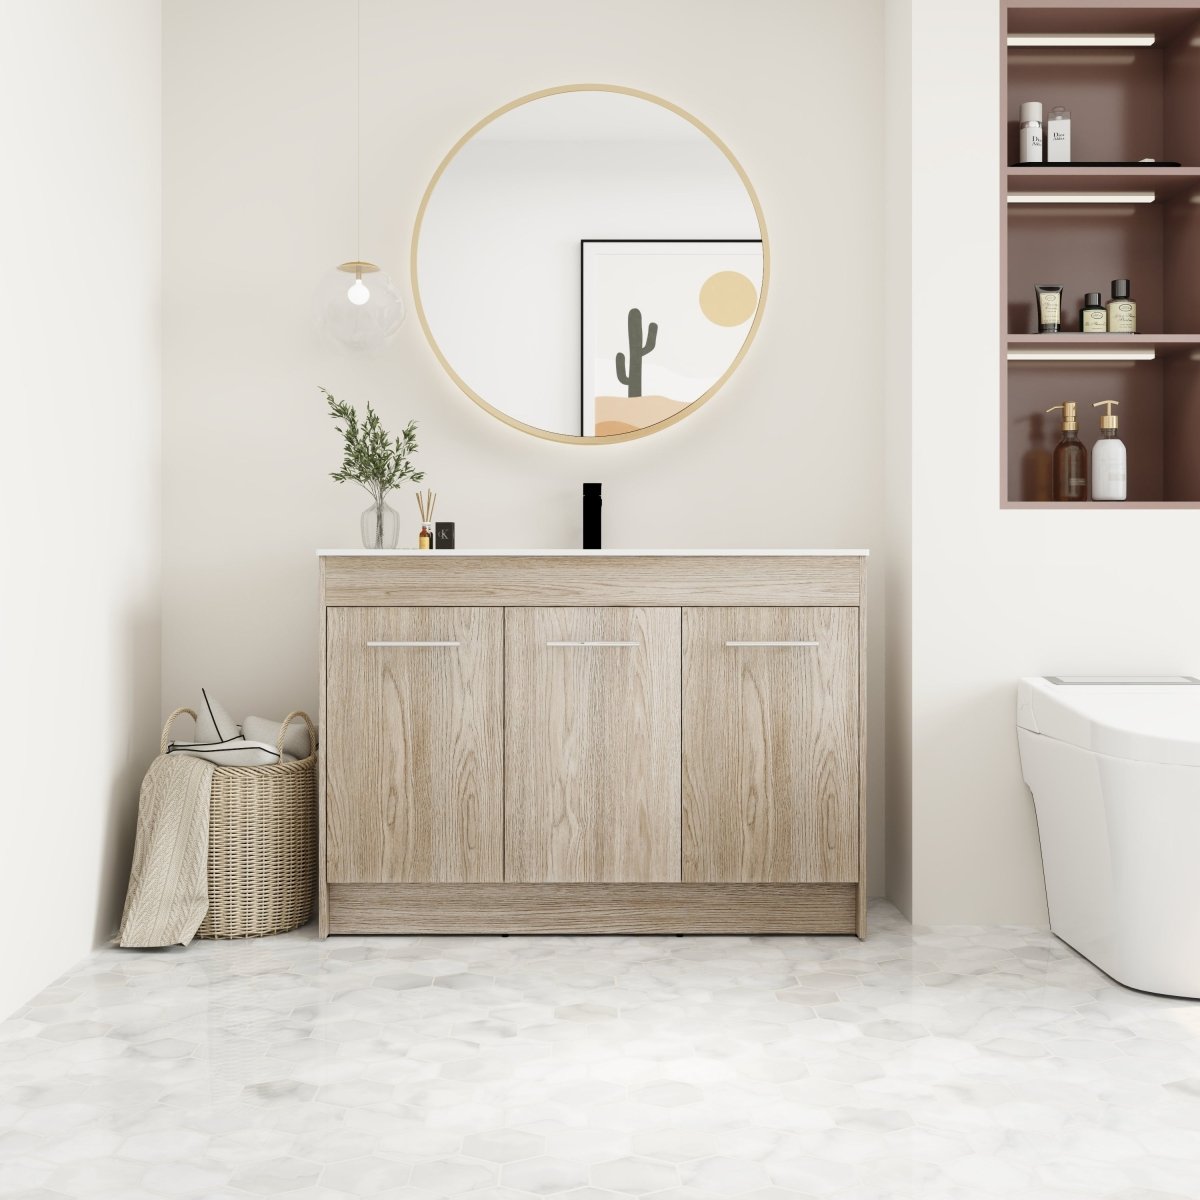 ExBrite 48 Inch Freestanding Bathroom Vanity